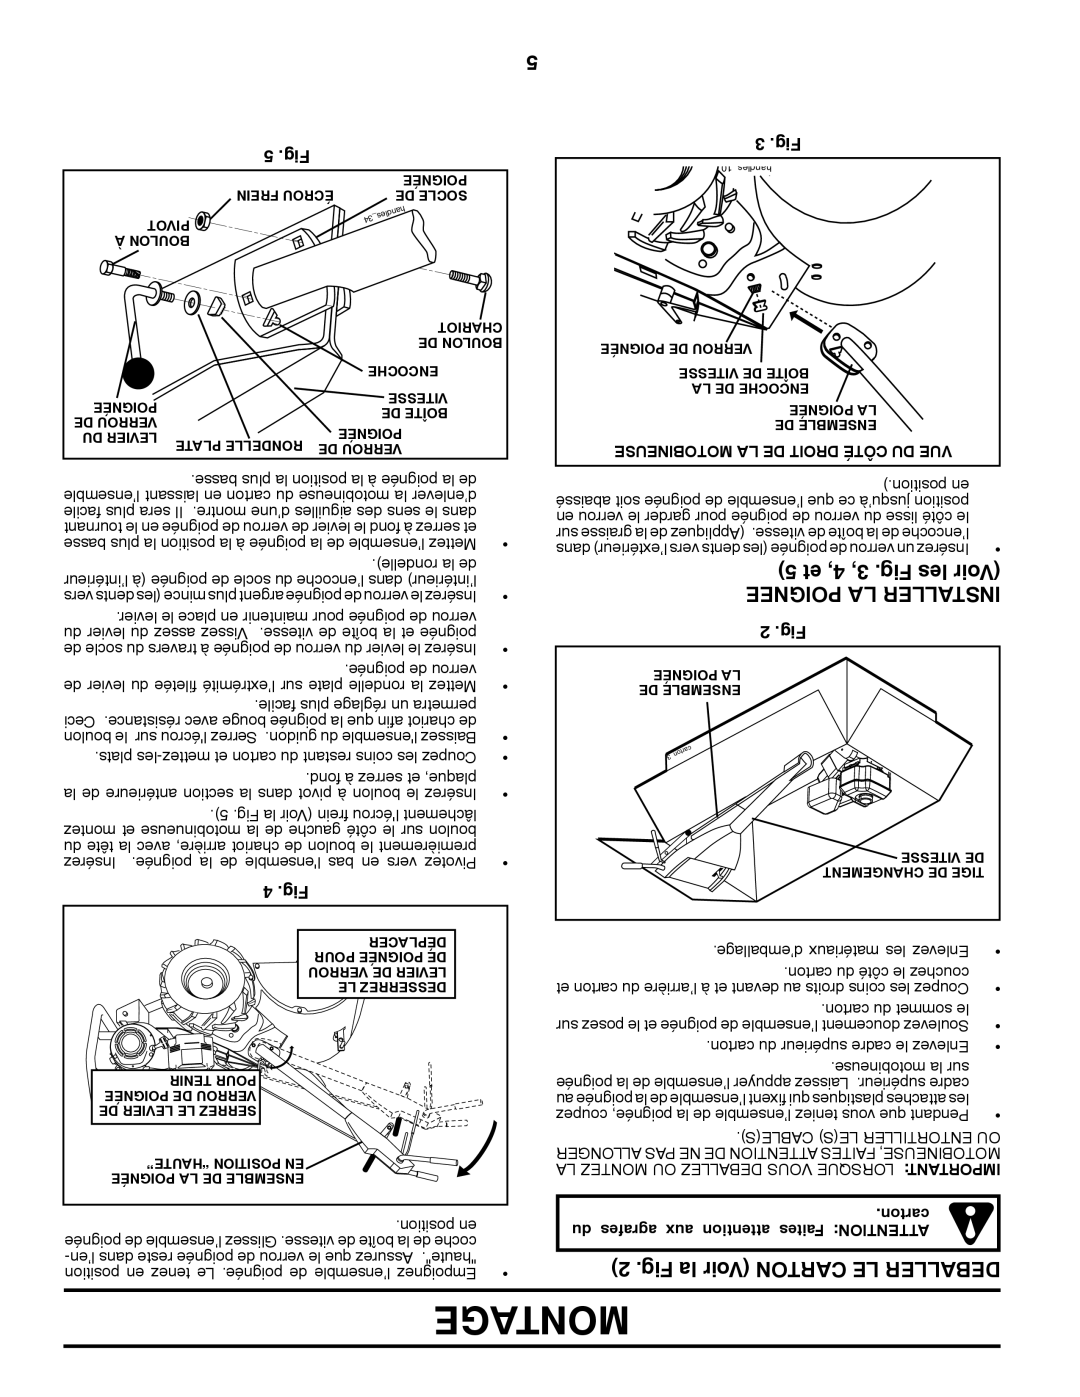 Poulan PRRT900 manual 5 et 4, 3, .Fig les Voir, Poignee La Installer, Fig la Voir CARTON LE DEBALLER, Montage, position en 